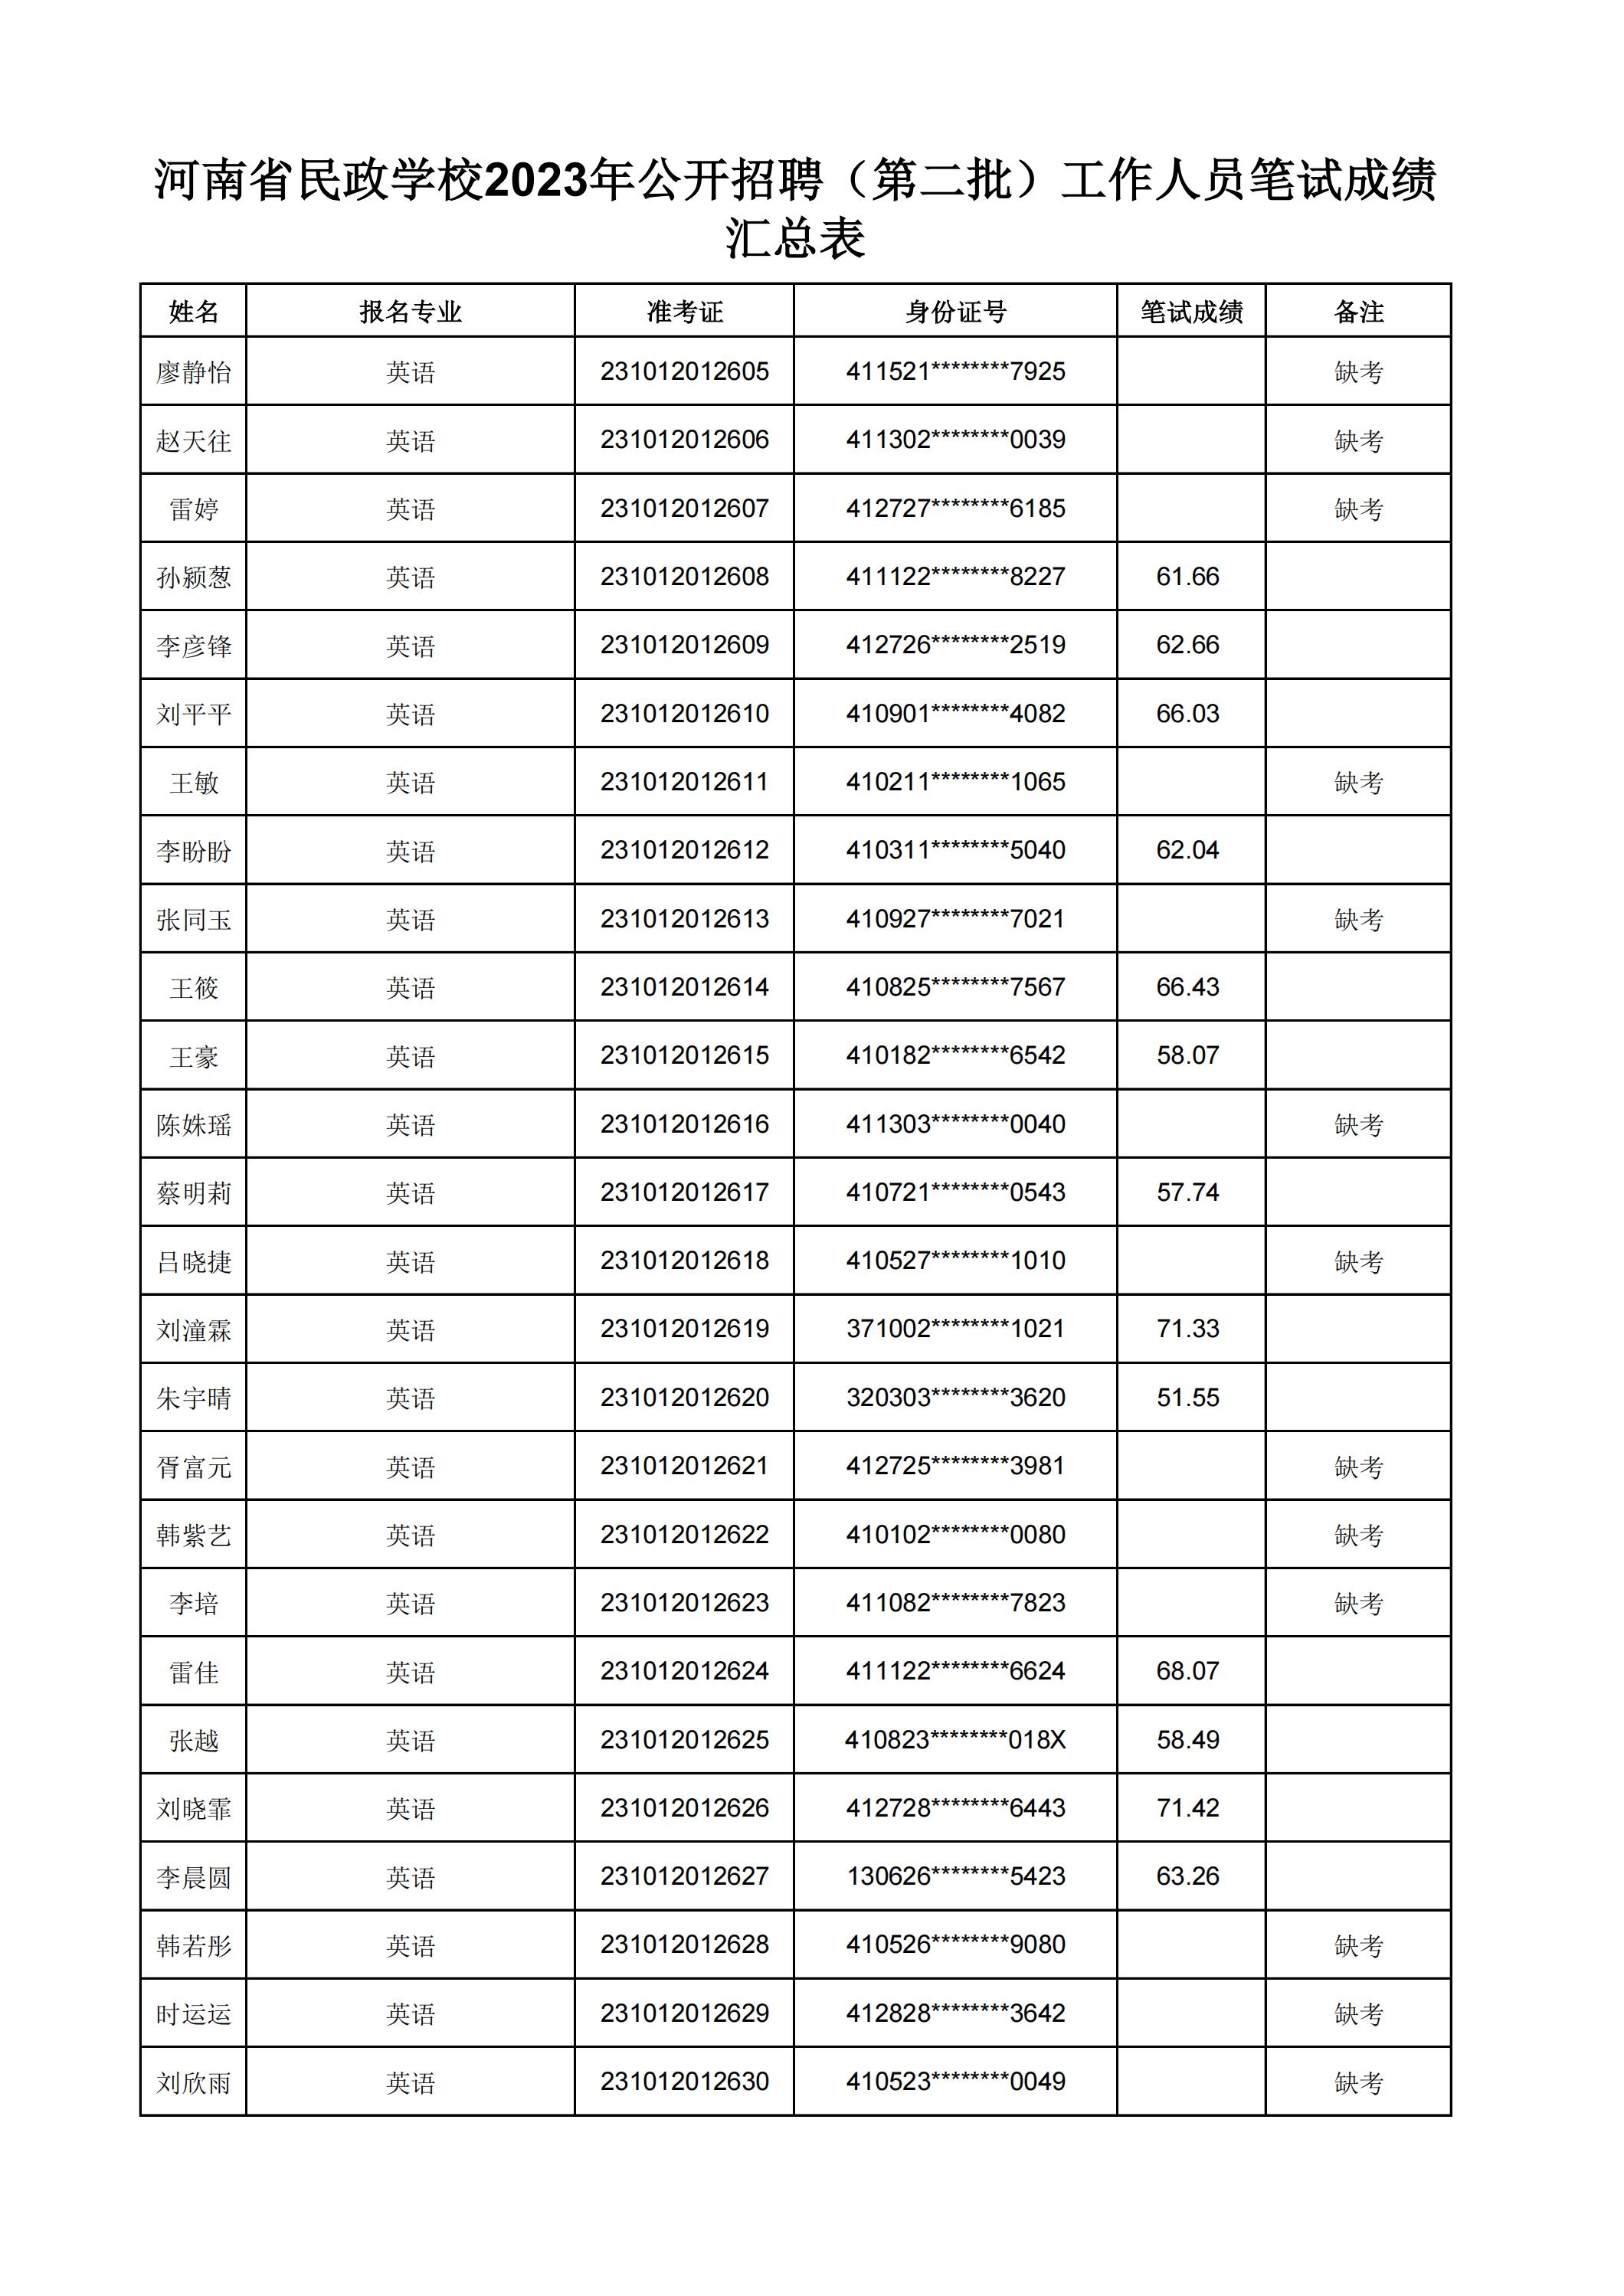 河南省民政学校2023年公开招聘（第二批）工作人员笔试成绩汇总表(2)_29.jpg